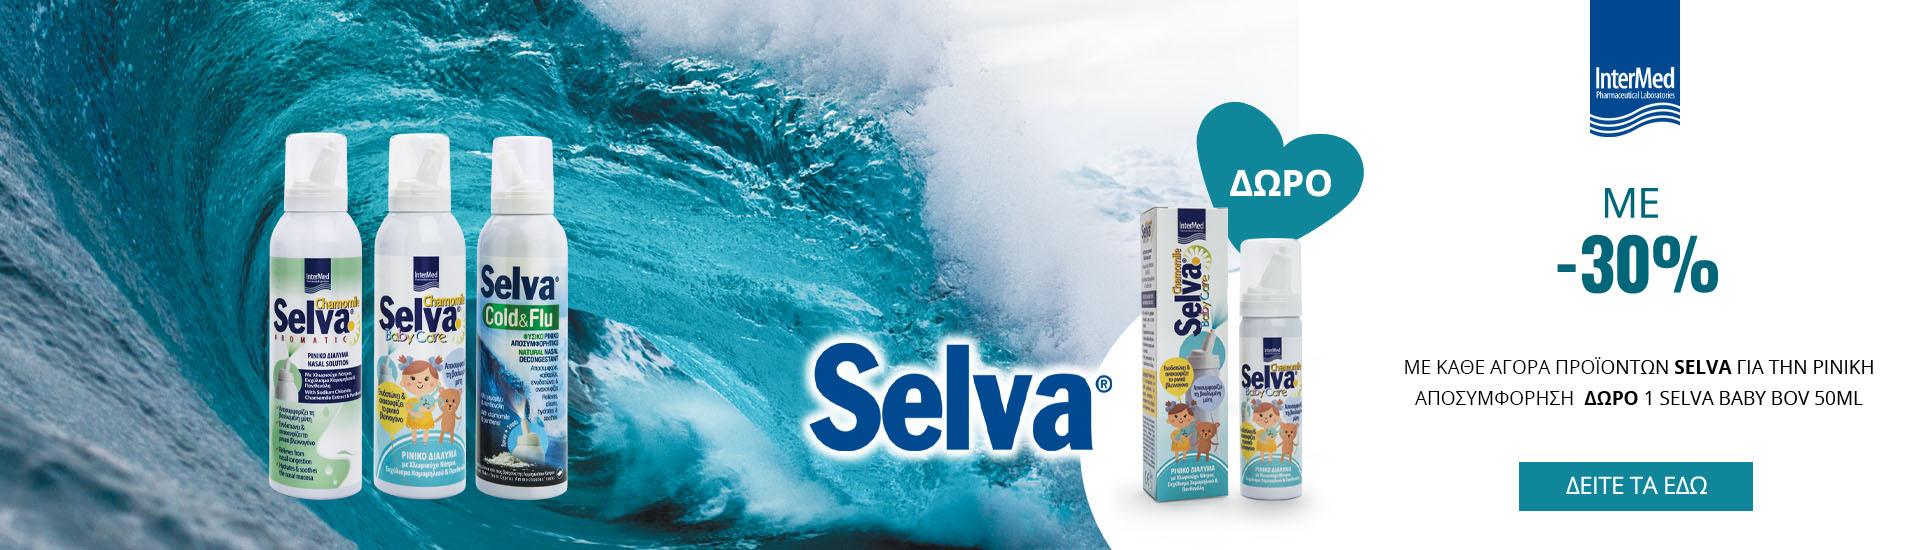 Με κάθε αγορά Intermed Selva για ρινική αποσυμφόρηση, ΔΩΡΟ 1 Selva Baby Bov 50ml!